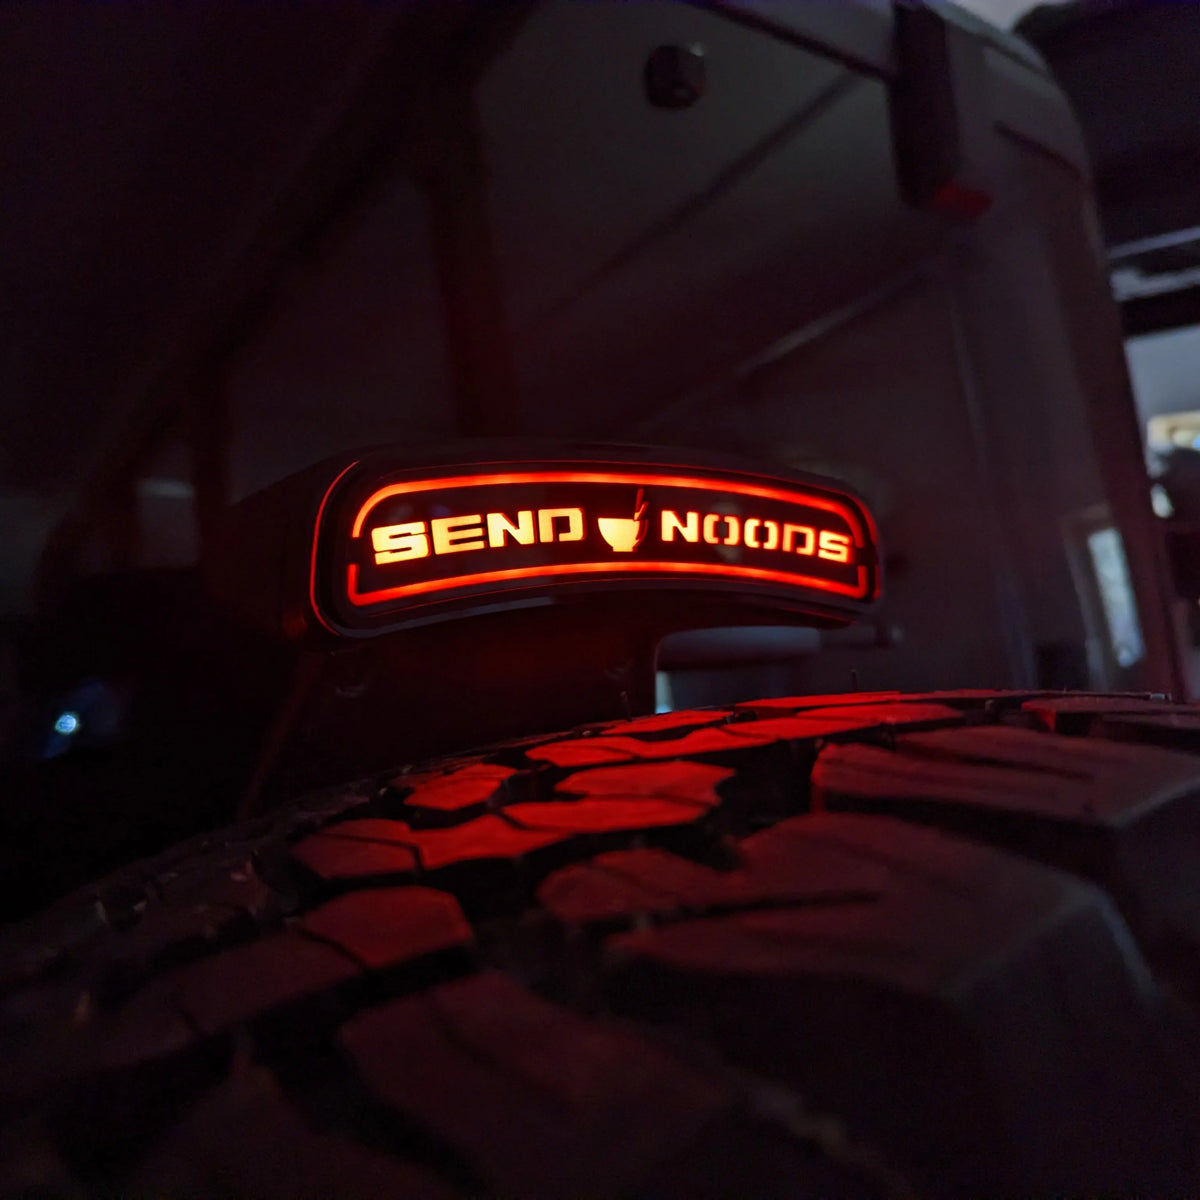 Third Brake Light Overlay Emblem - Send Noods - Fits 2021+ Bronco® - Black